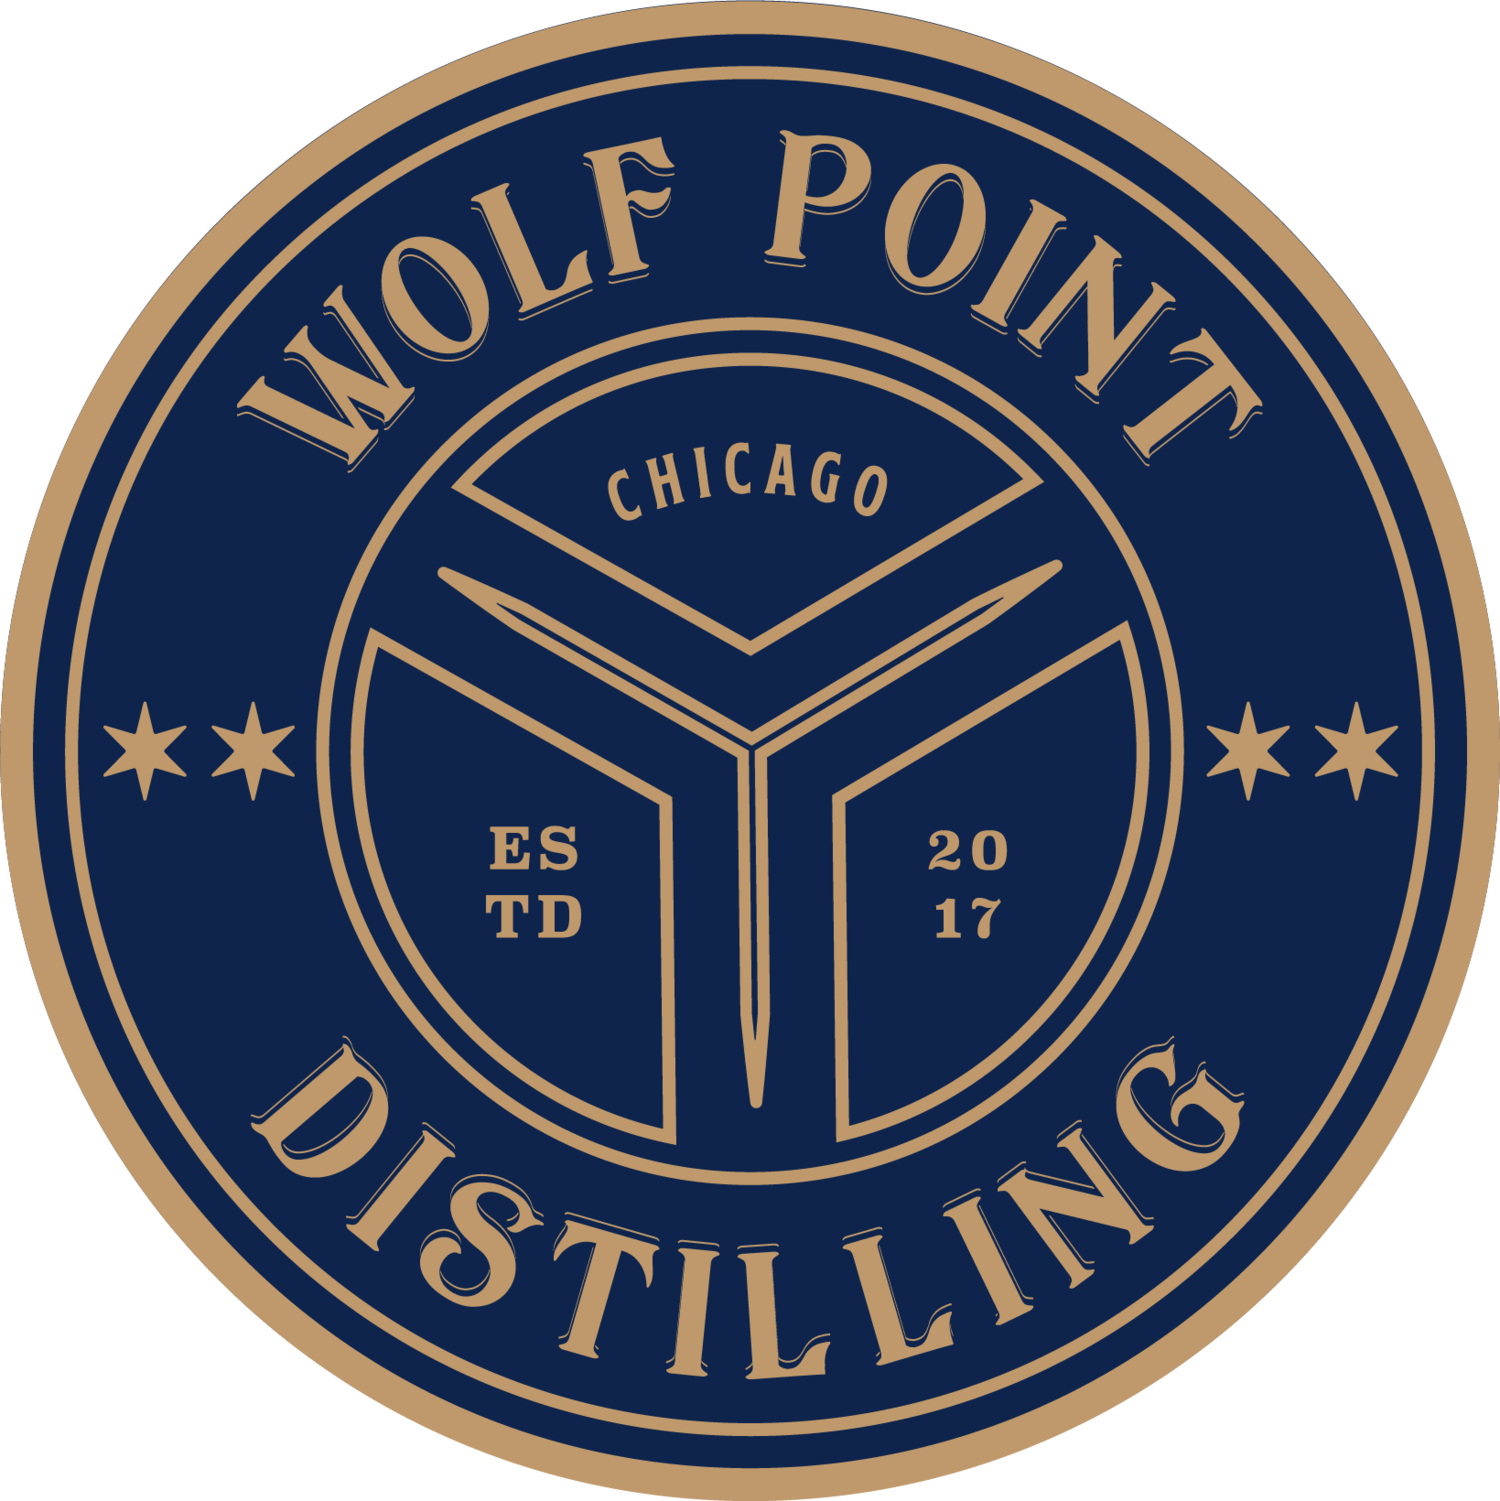 Wolf Point Distilling